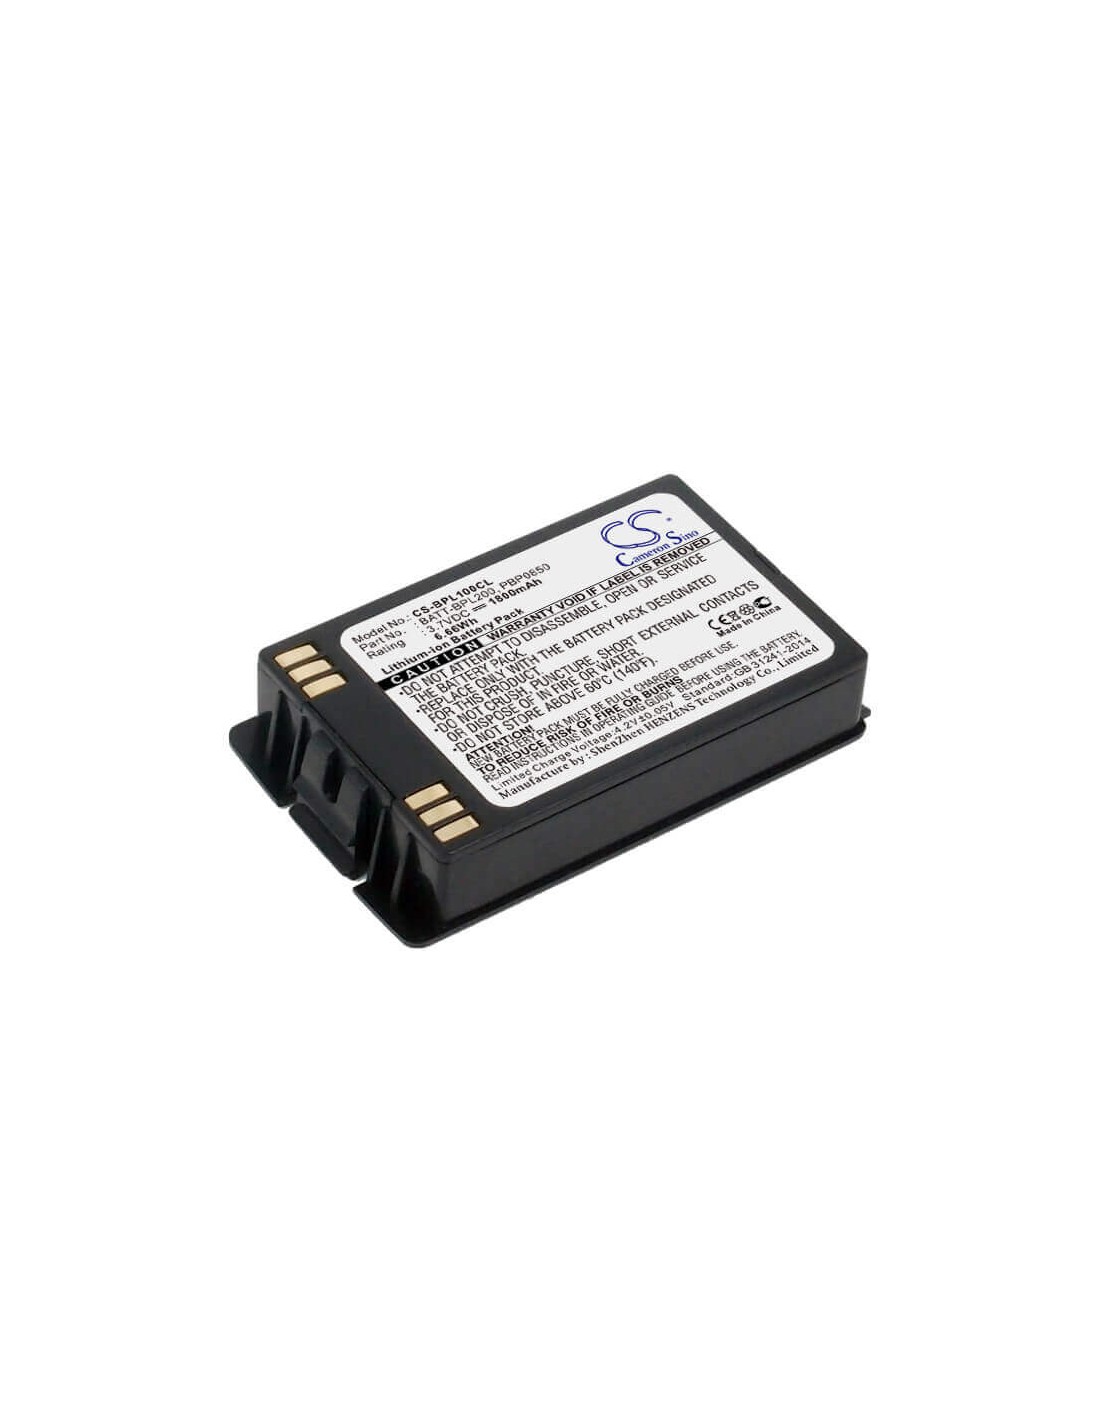 Battery for Avaya, 3641, 3641 Comcode, 3645, 3.7V, 1800mAh - 6.66Wh